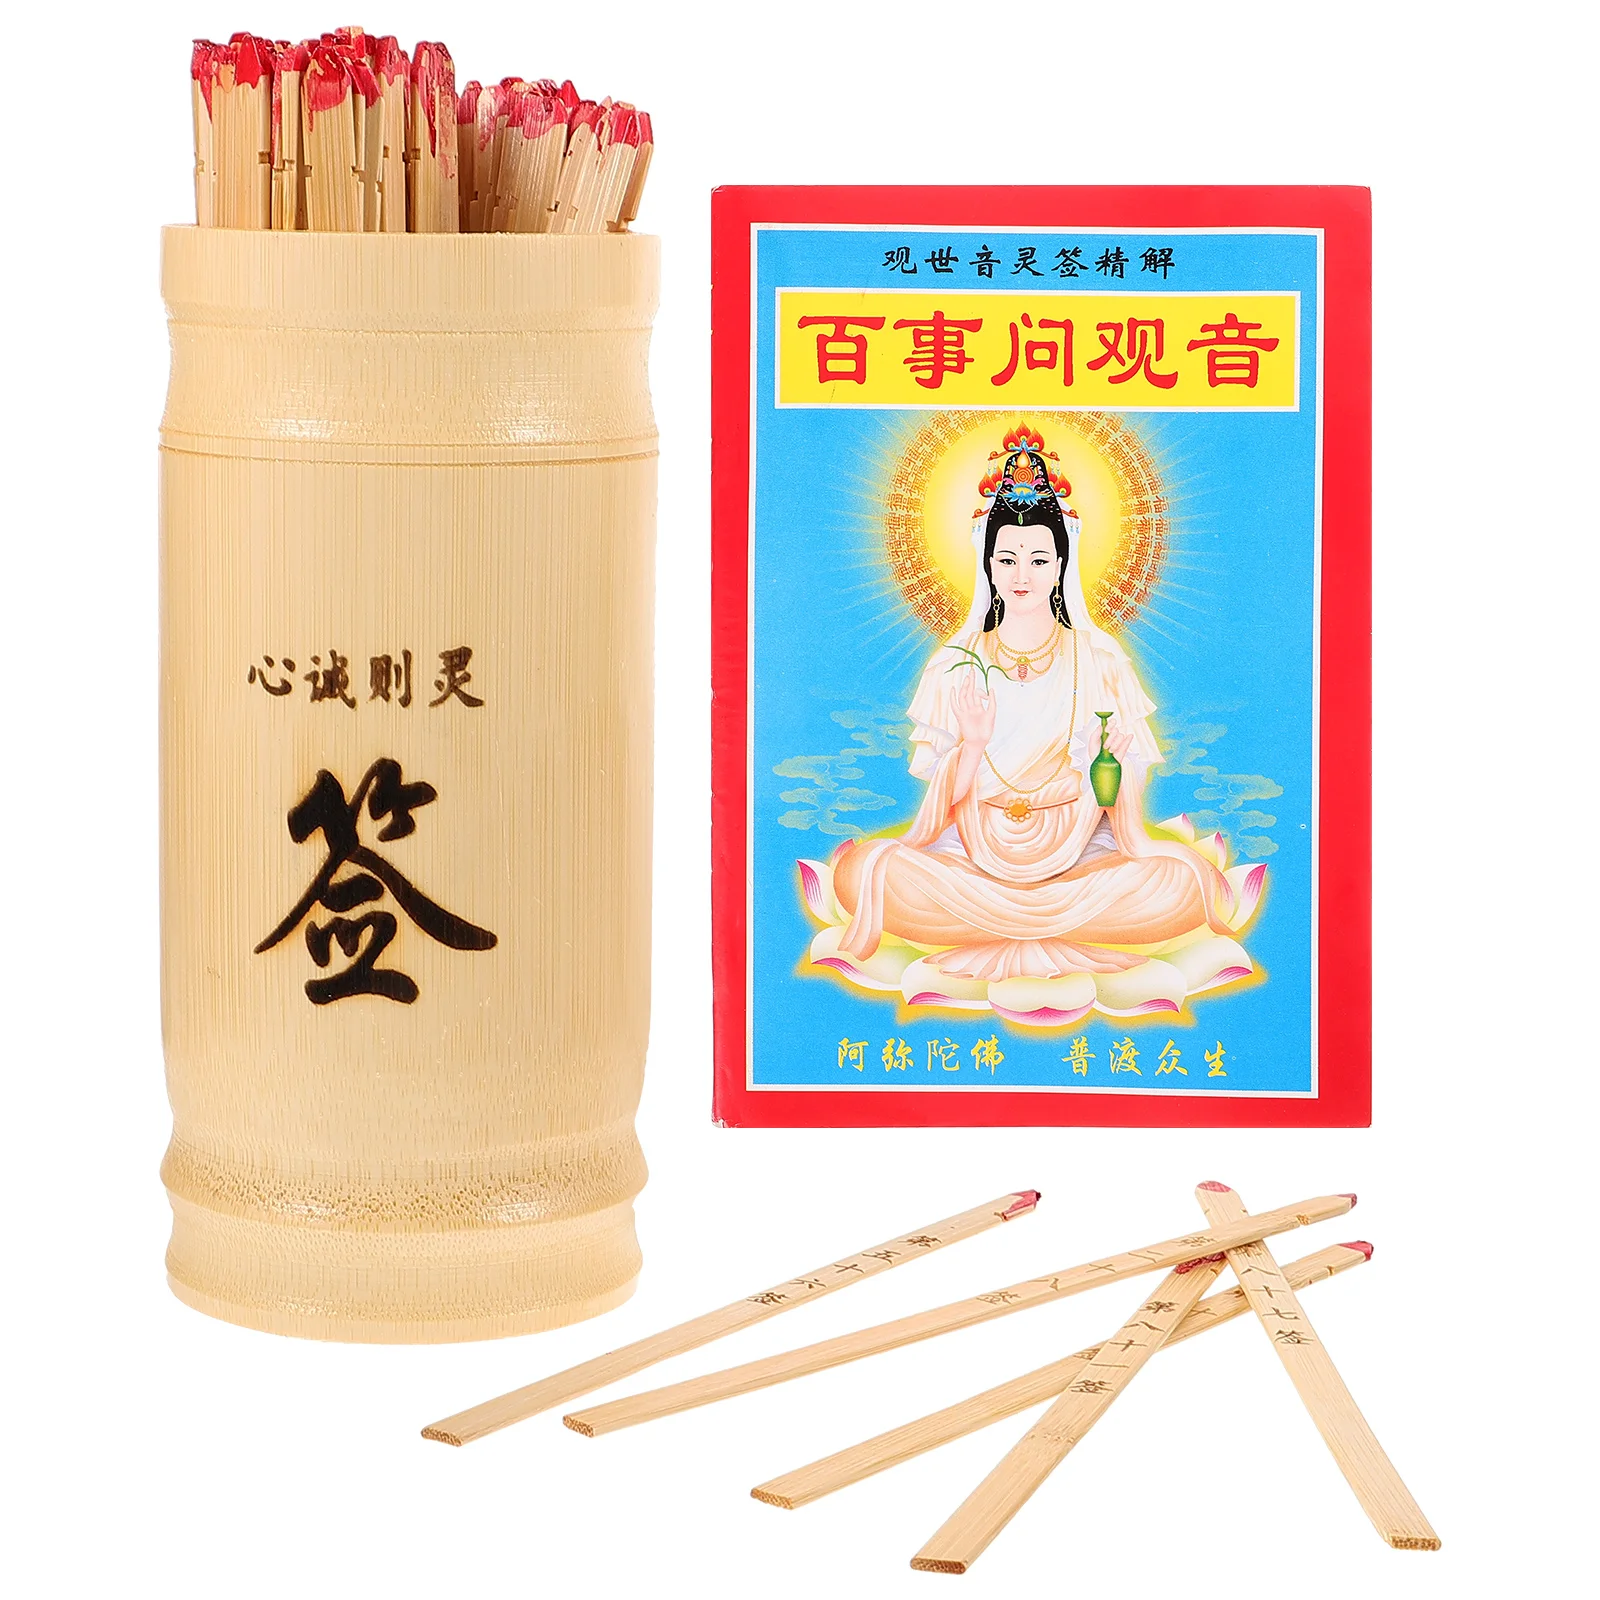 

Реквизит Avalokitesvara лотерея бамбуковые палочки ведро для удачи бумага китайское рассказывание